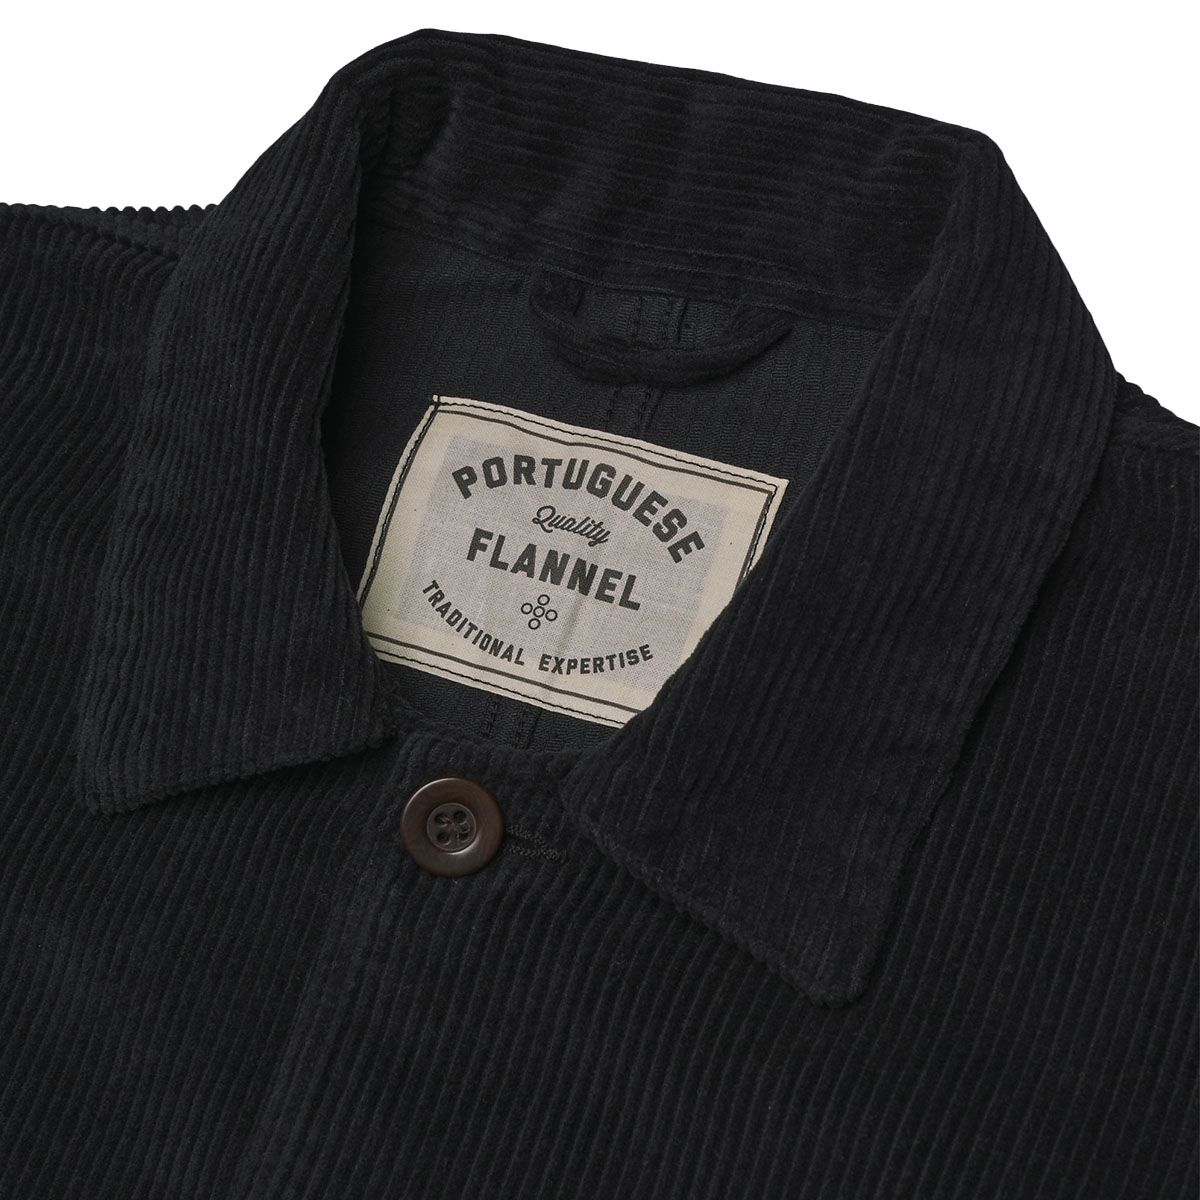 Portuguese Flannel Labura Cotton-Corduroy Overshirt Black, hergestellt aus den feinsten exklusiven Stoffen